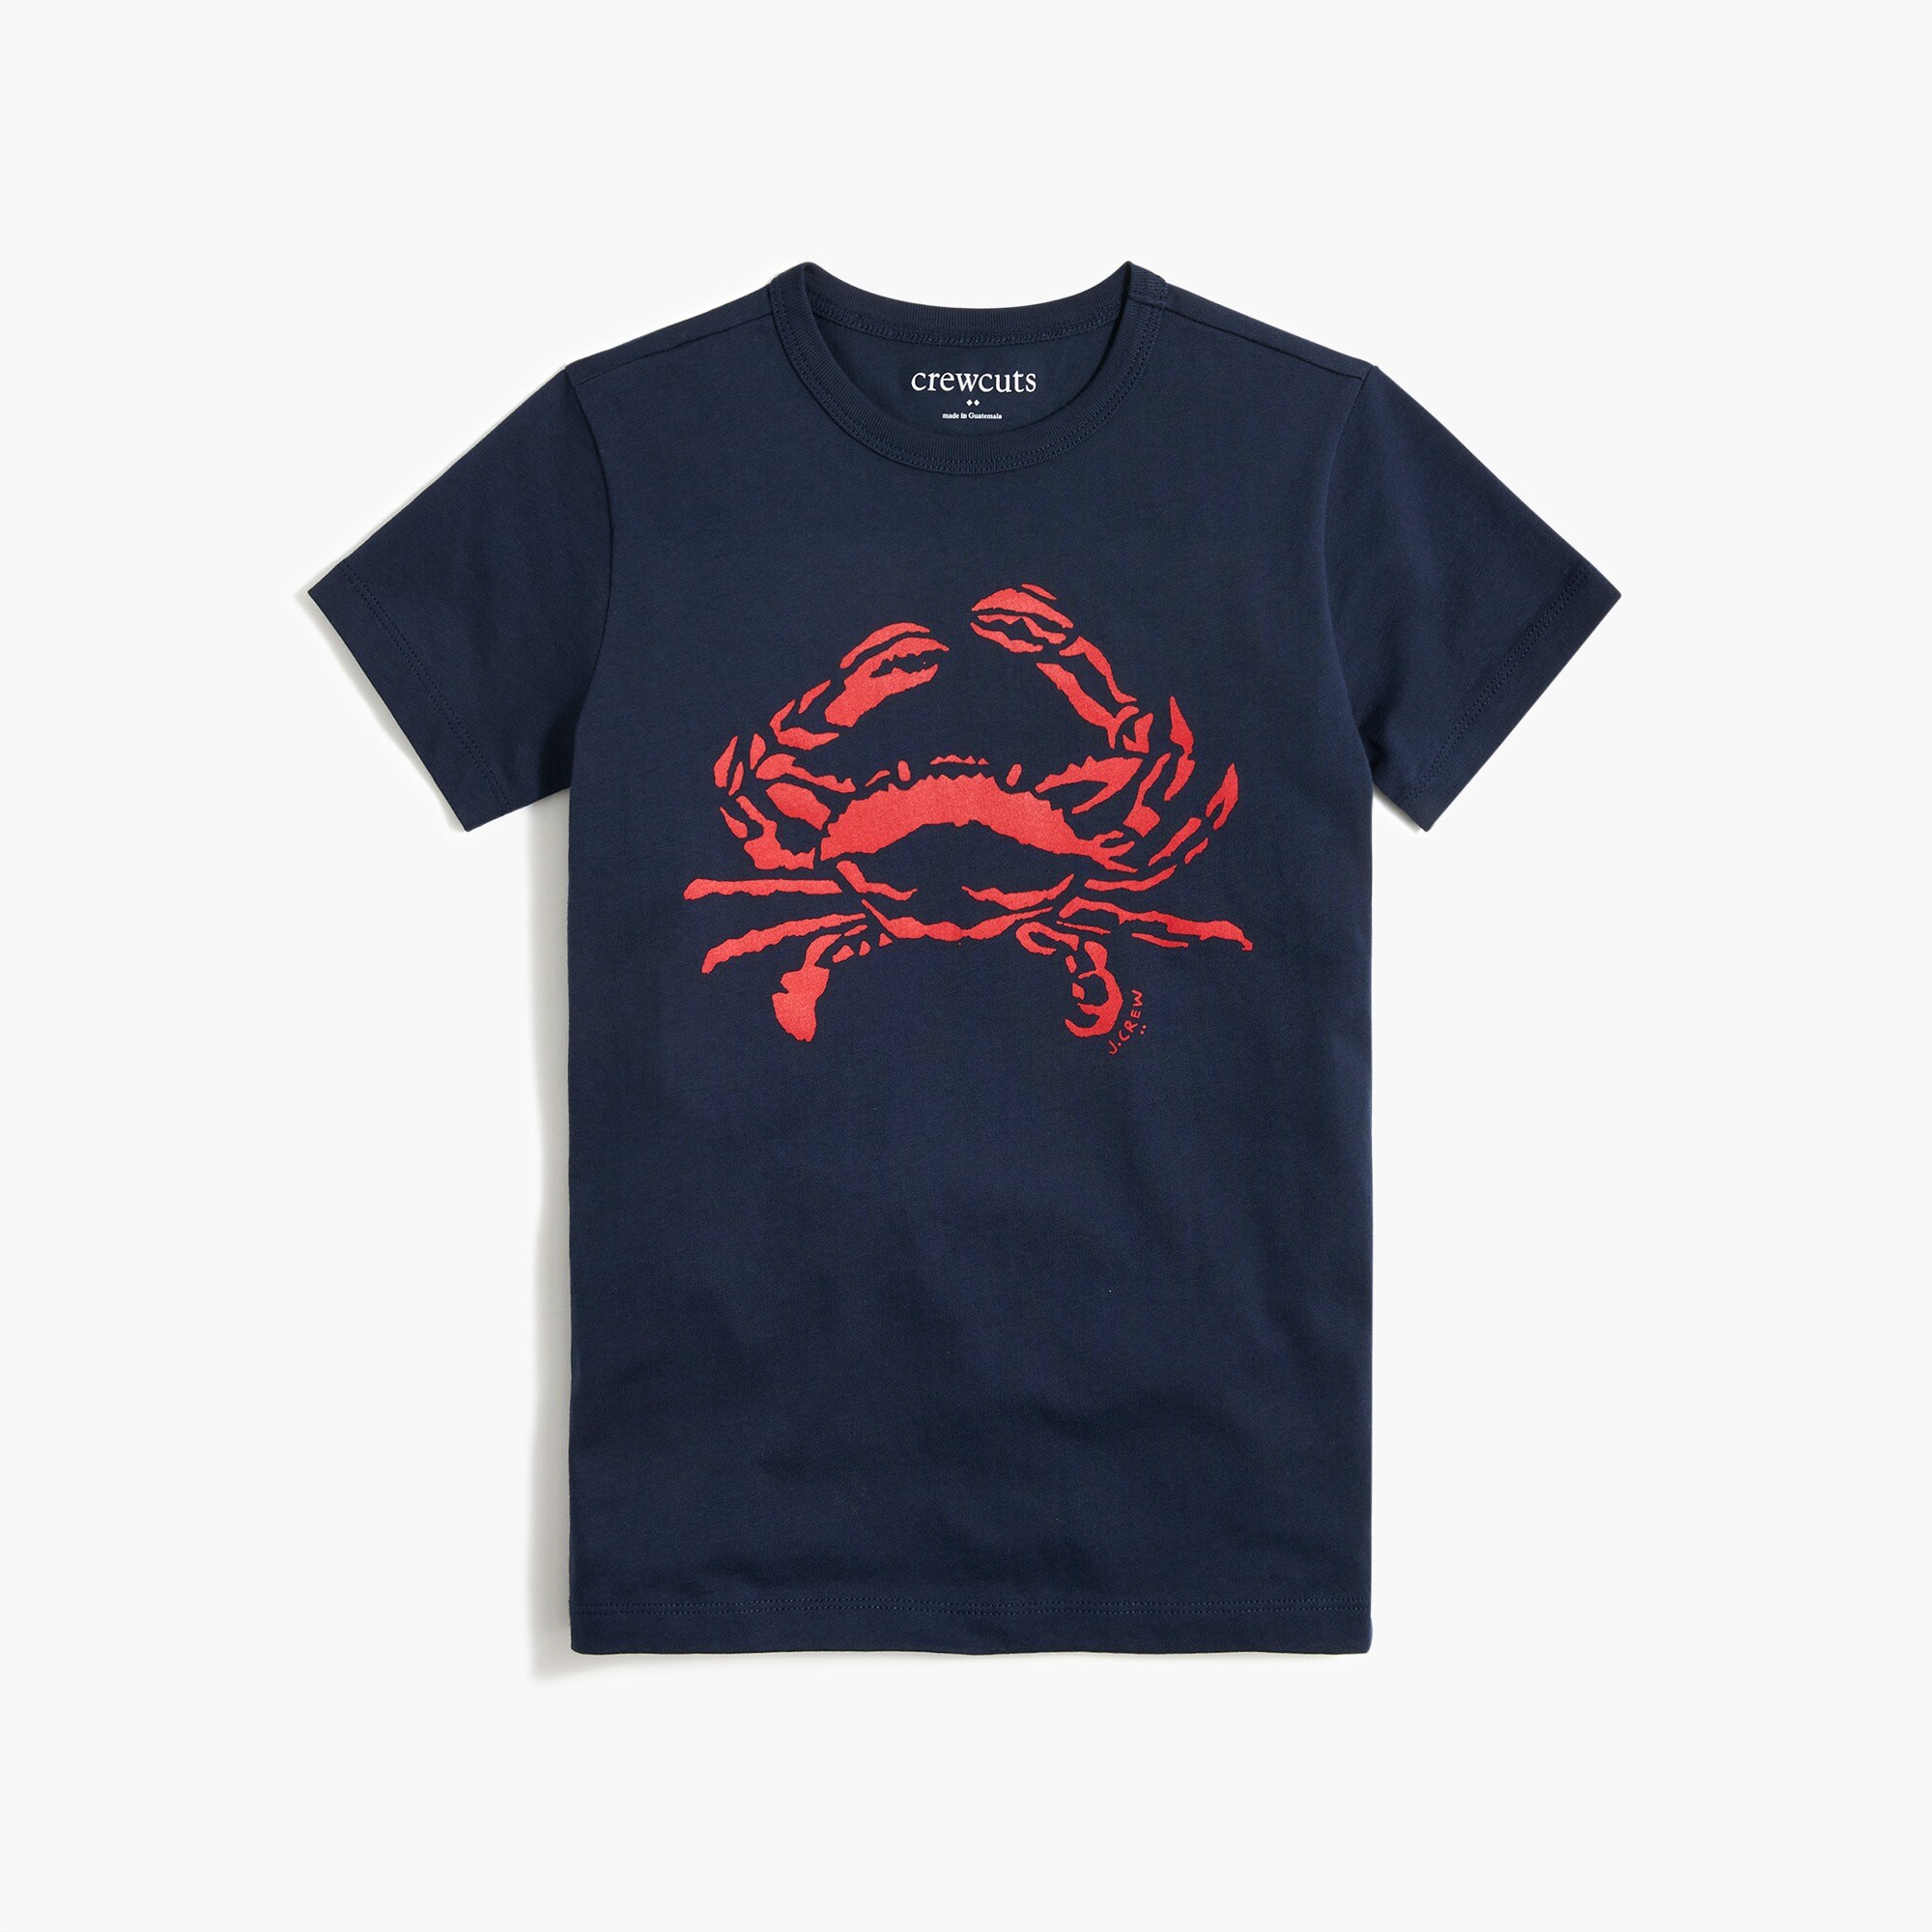  Kids&apos; crab graphic tee